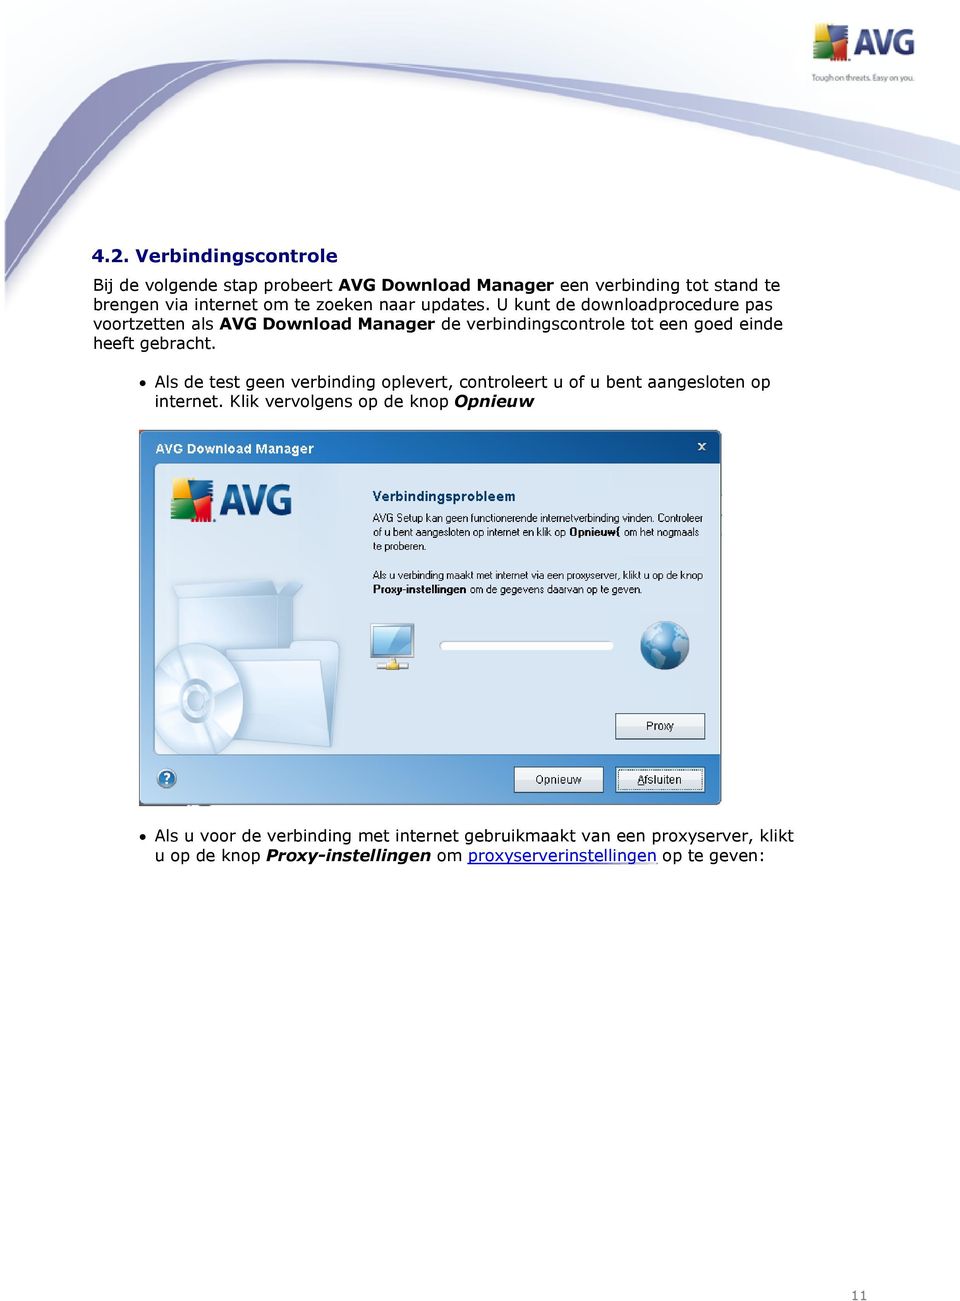 U kunt de downloadprocedure pas voortzetten als AVG Download Manager de verbindingscontrole tot een goed einde heeft gebracht.